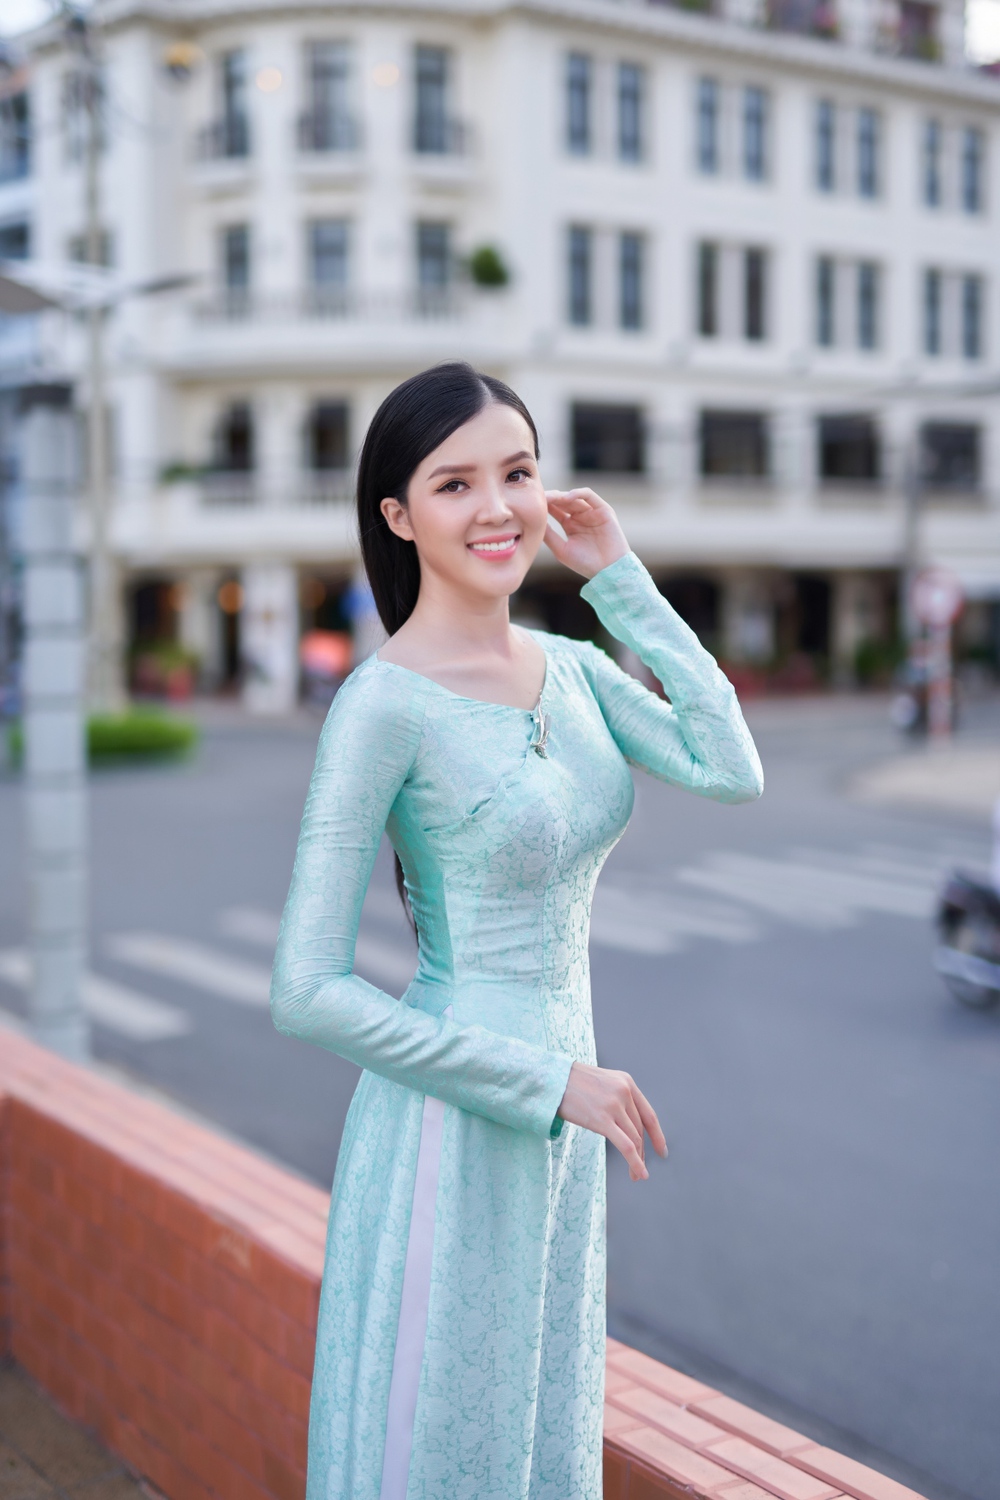 Hoa khôi Huỳnh Thuý Vi xinh đẹp trong bộ ảnh quảng bá du lịch - Ảnh 2.